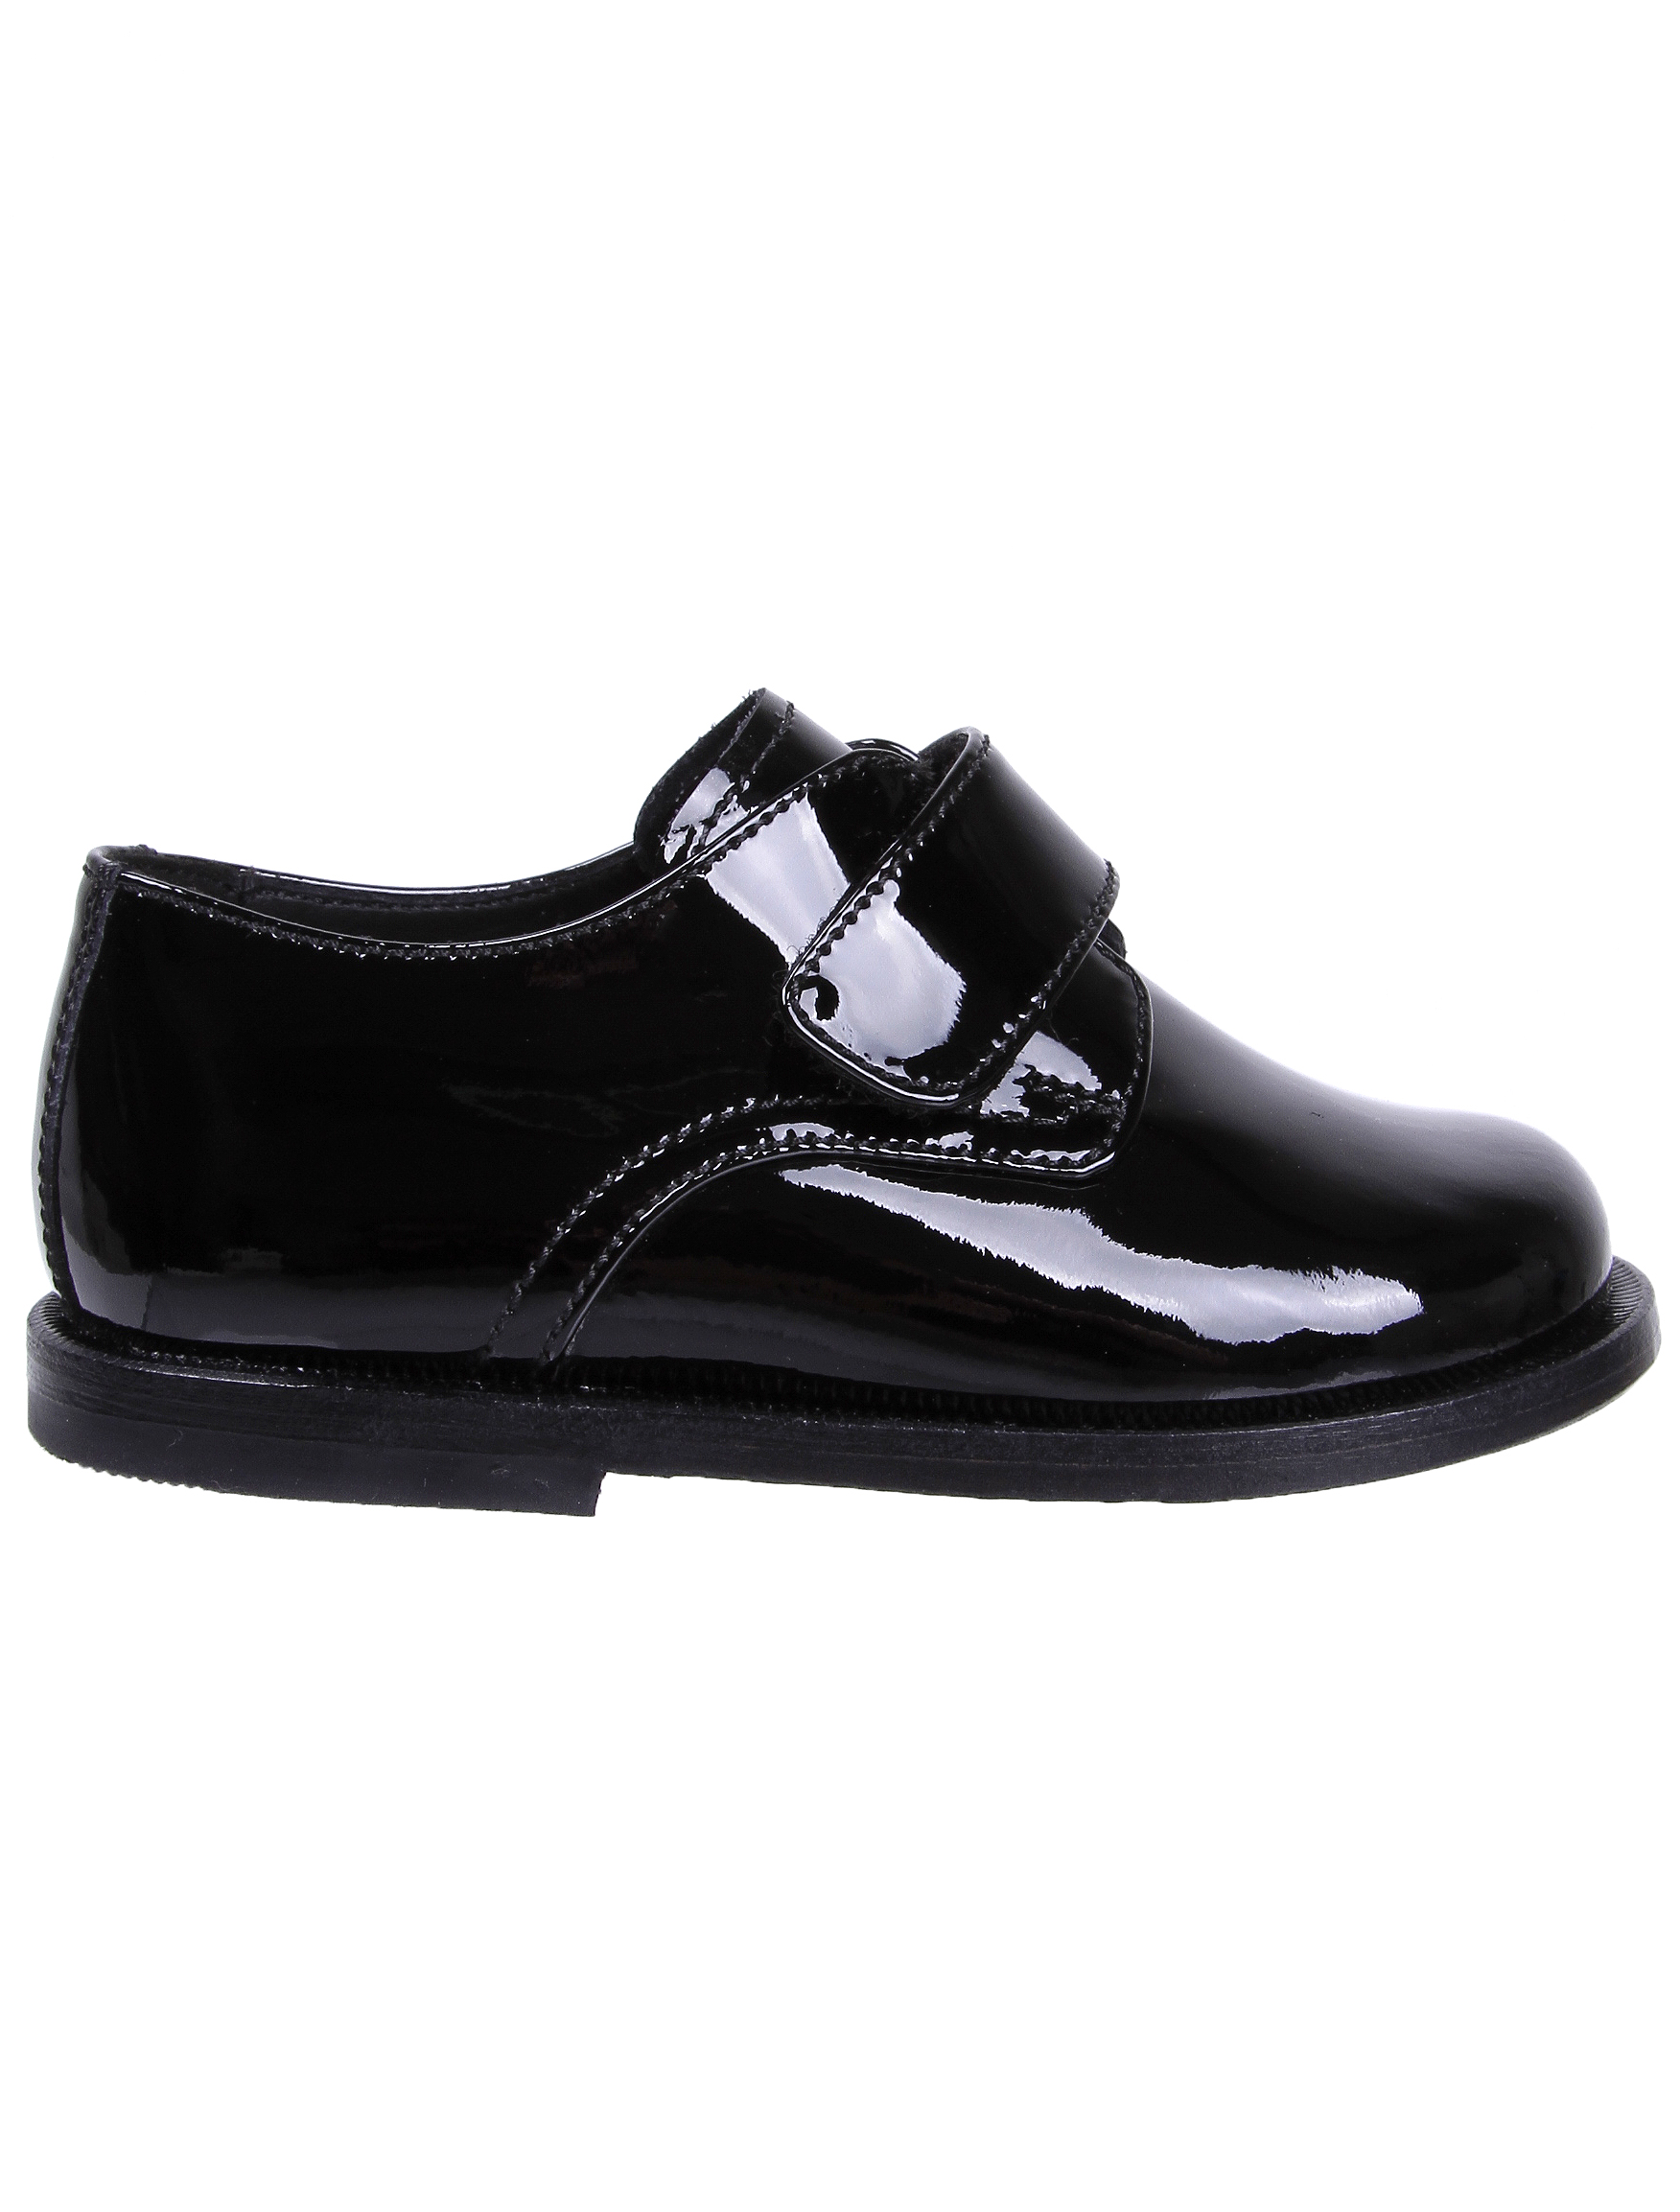 Туфли Missouri 1913233, цвет черный, размер 29 2011119880092 - фото 2